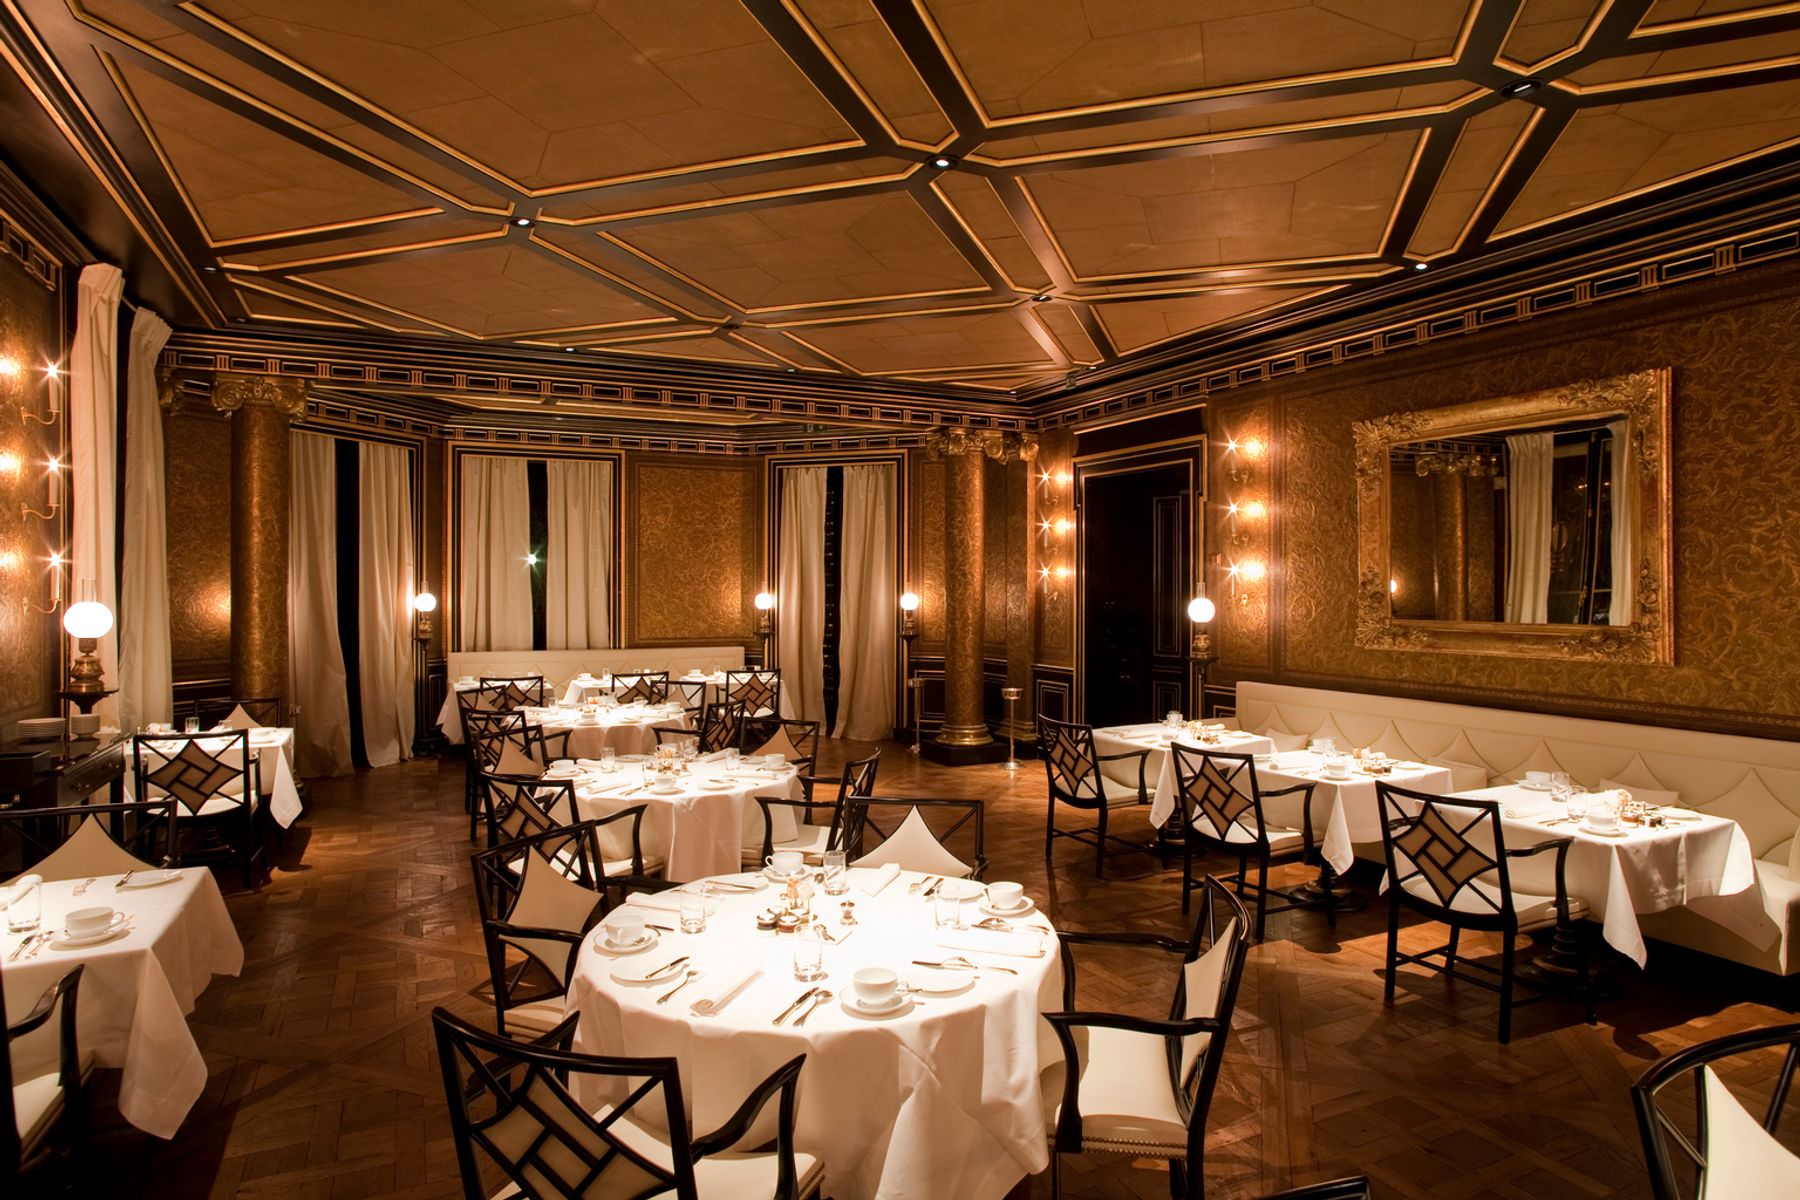 Restaurant Le Gabriel in the Hotel La Réserve, Paris. Photographer: Edgar Zippel, Berlin.